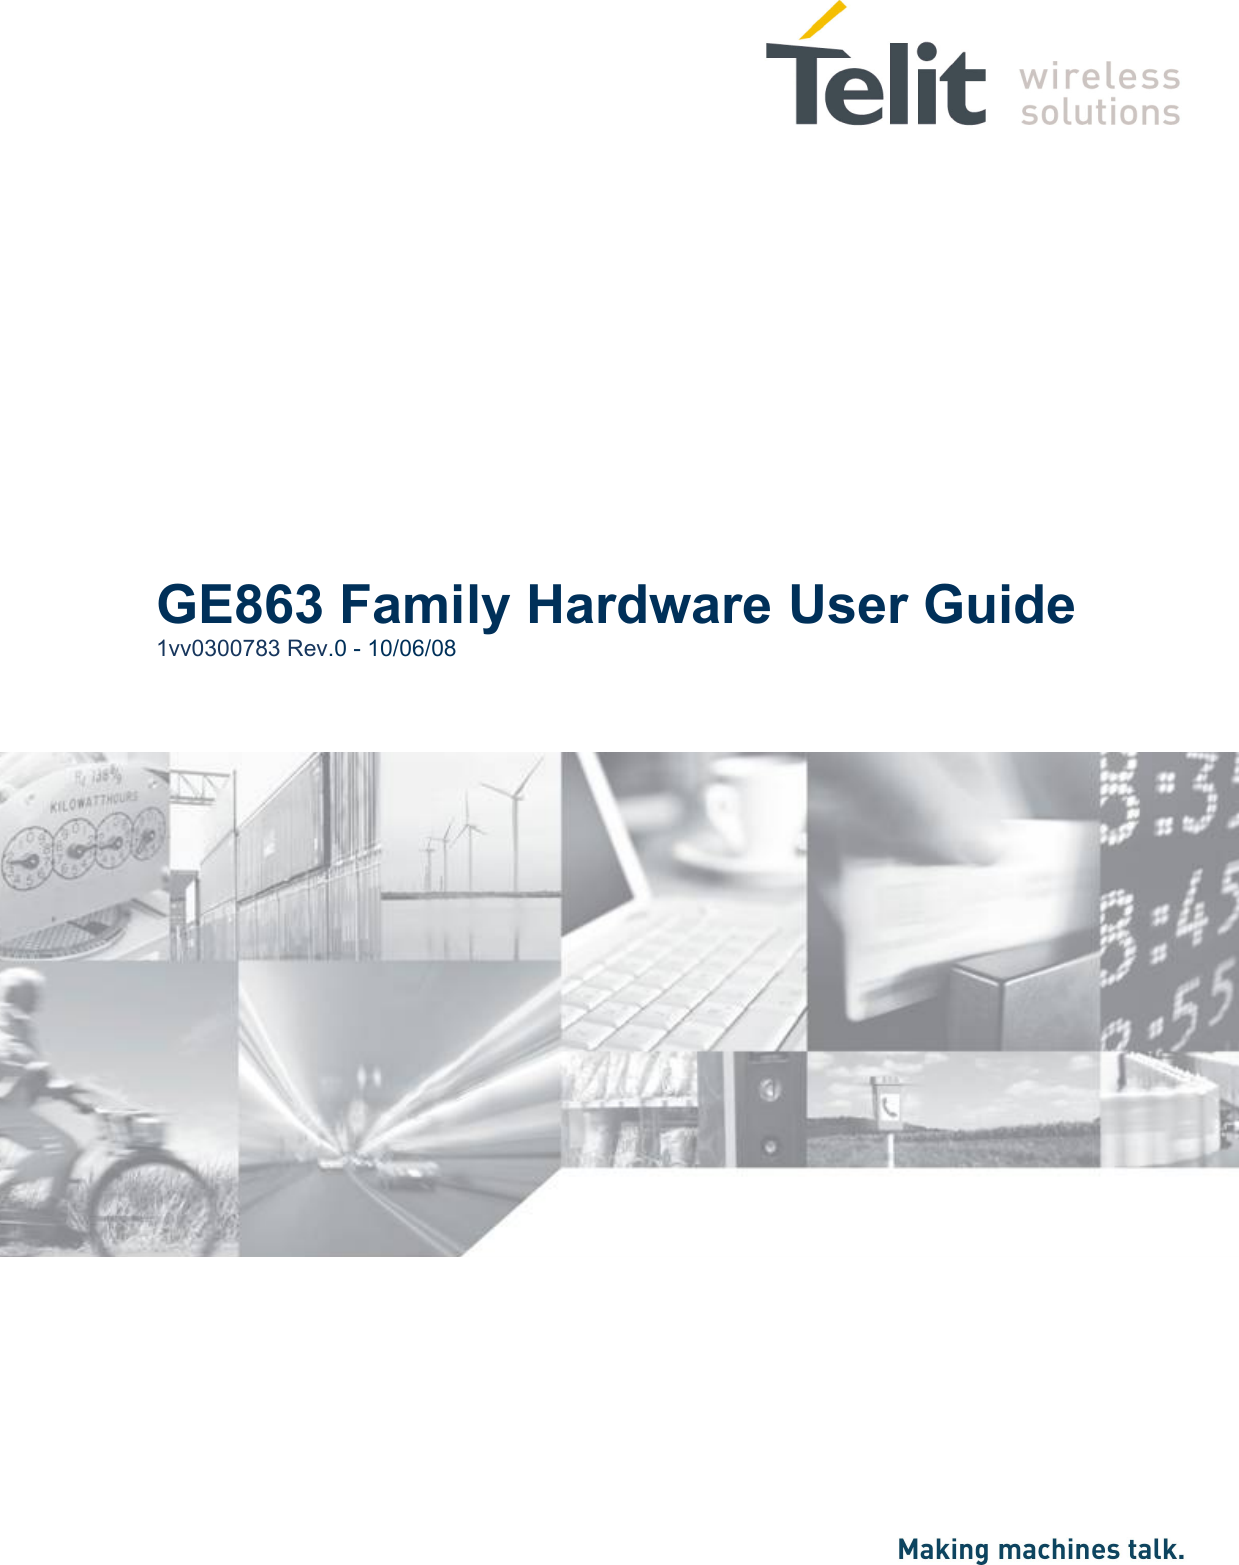                       GE863 Family Hardware User Guide 1vv0300783 Rev.0 - 10/06/08  